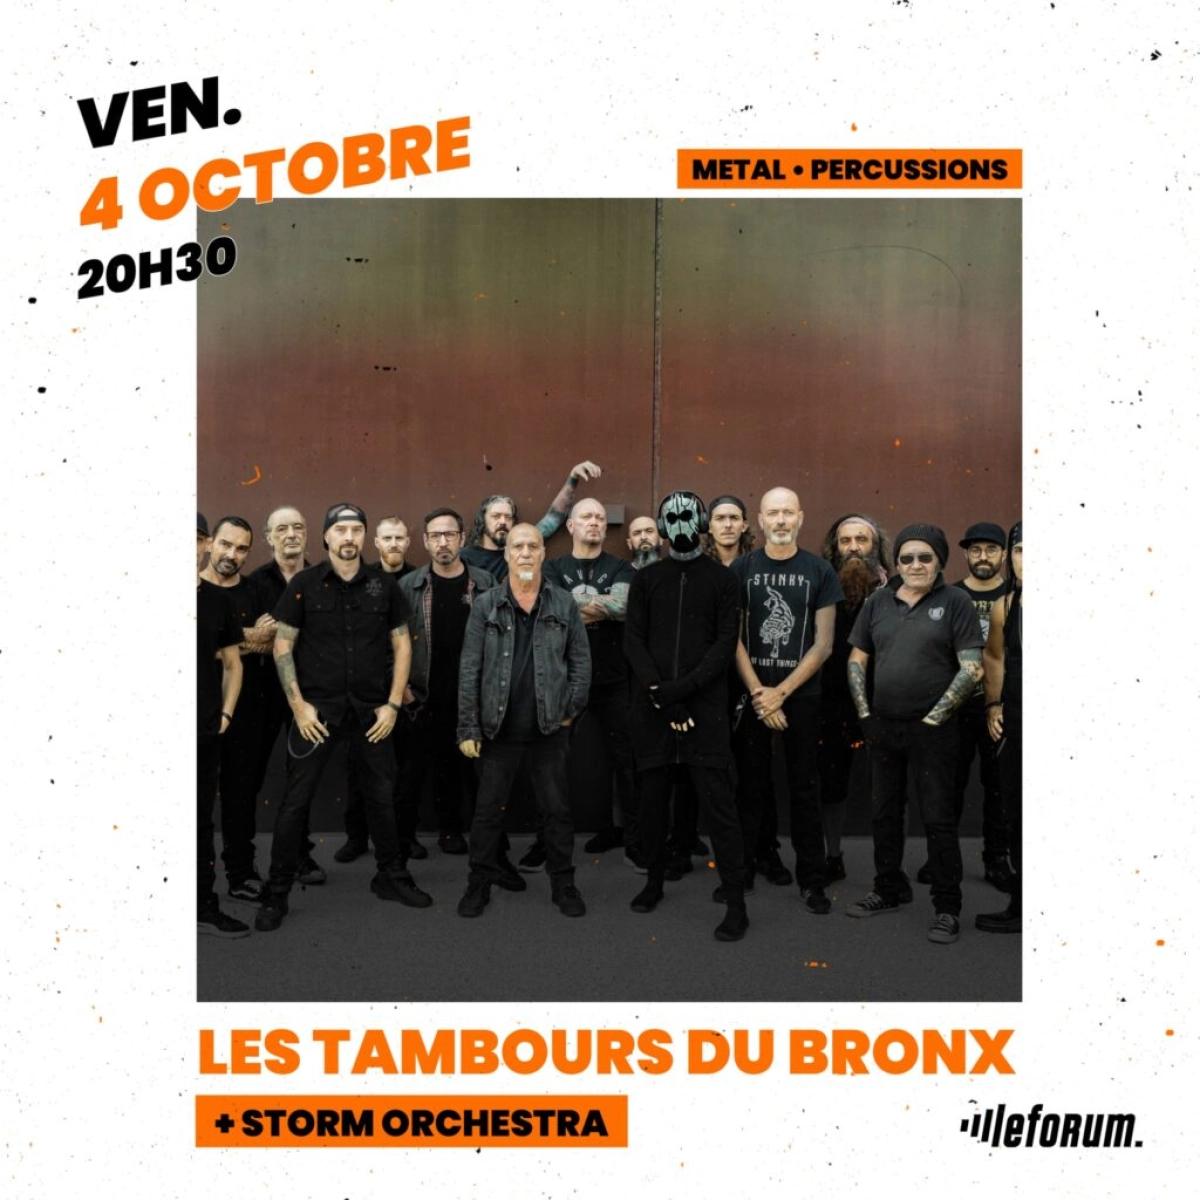 Les Tambours du Bronx at Le Forum Vaureal Tickets